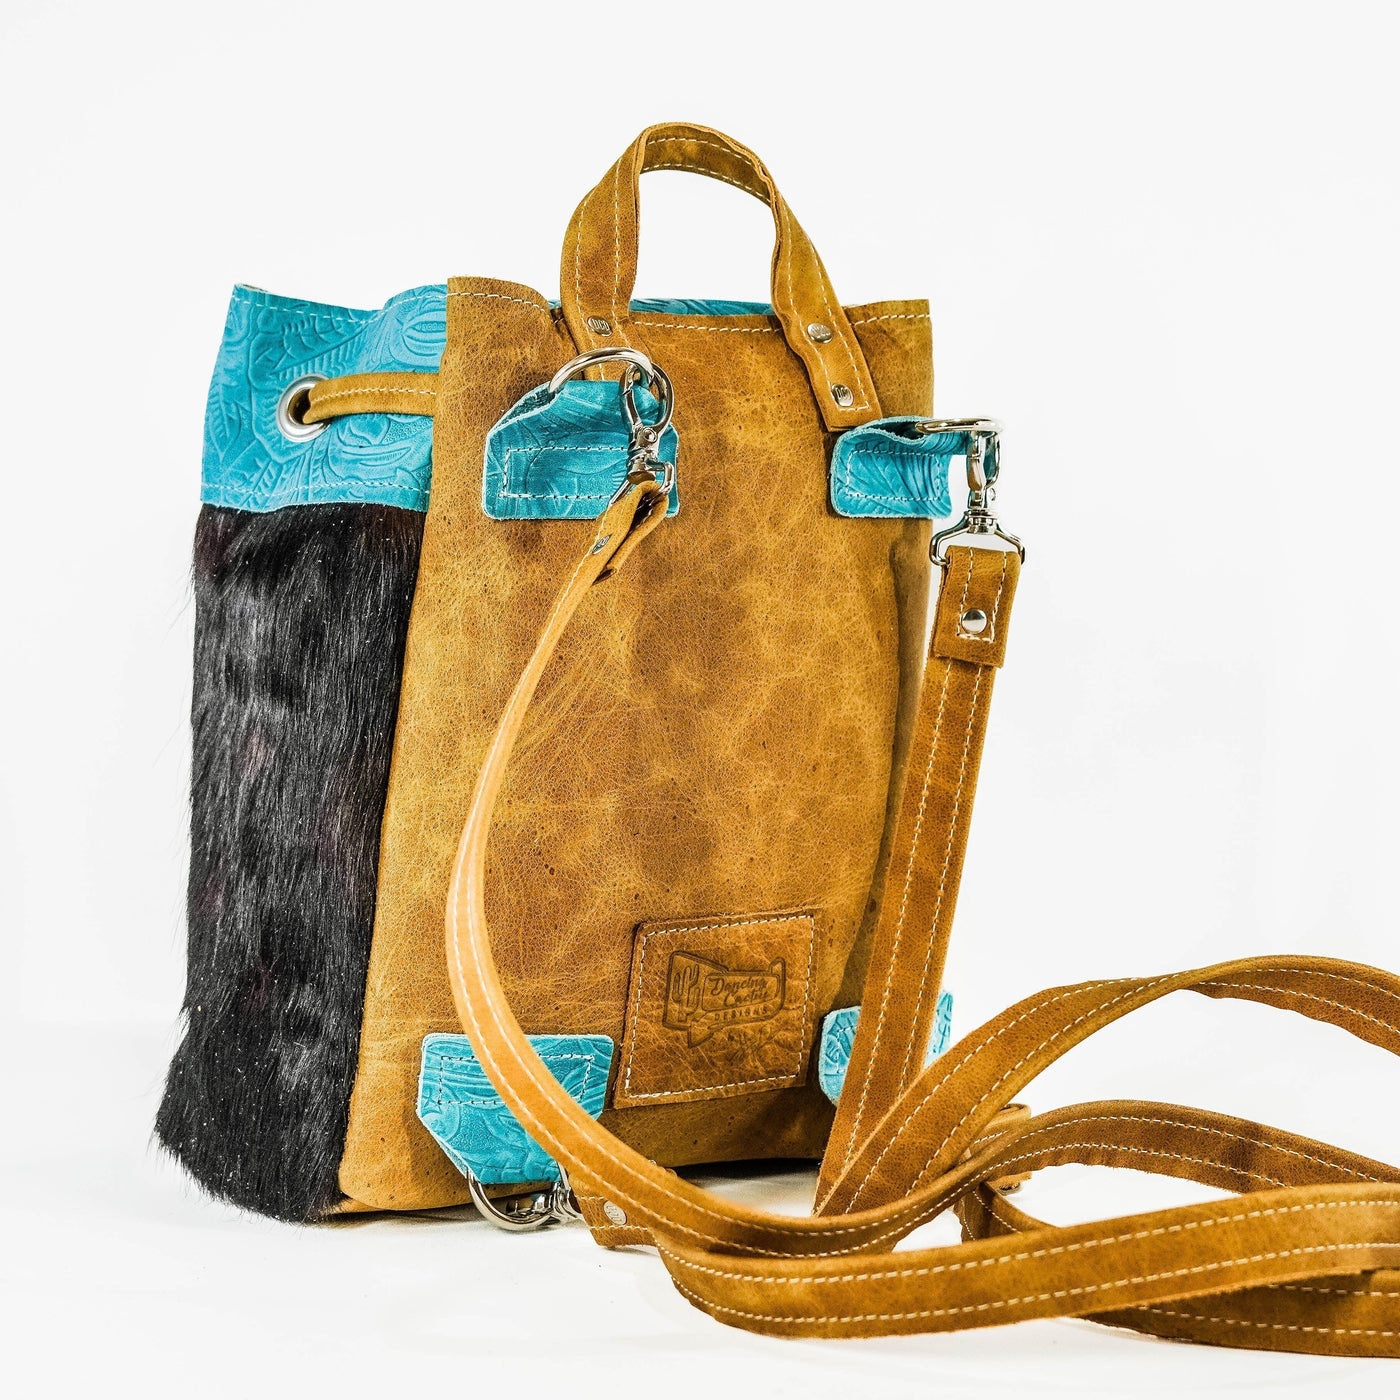 004 Mini Kelsea Backpack - Triocolor w/ Turquoise Denver Tool-Mini Kelsea Backpack-Western-Cowhide-Bags-Handmade-Products-Gifts-Dancing Cactus Designs